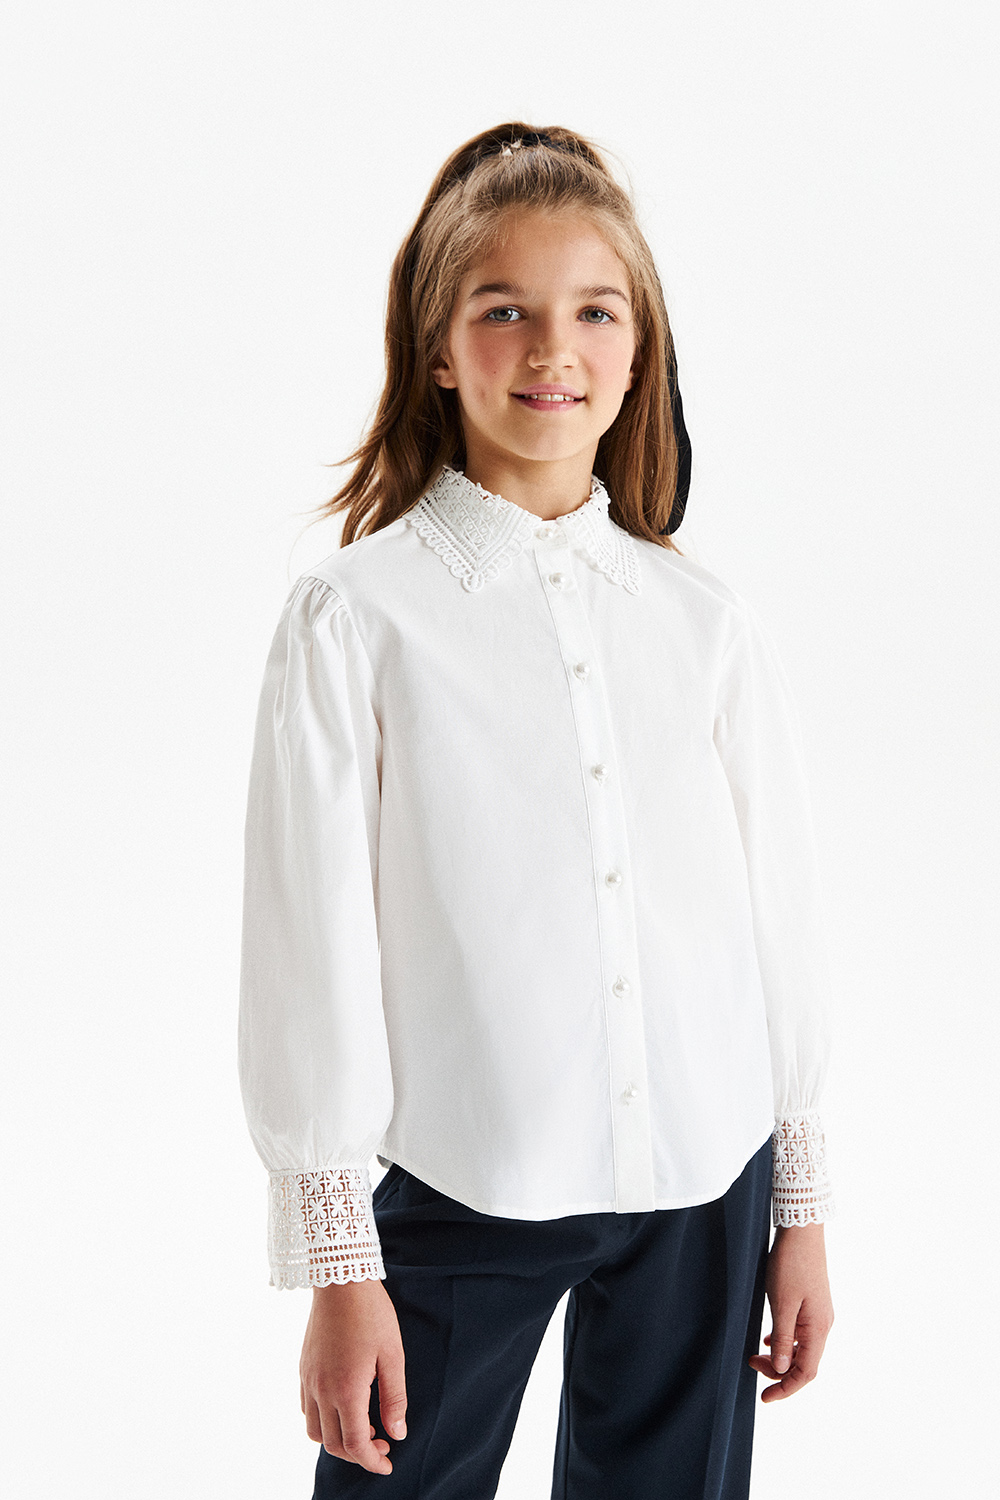 Хлопковая блузка с ажурными манжетами и воротничком (SSFSG-329-23022-201) Silver spoon